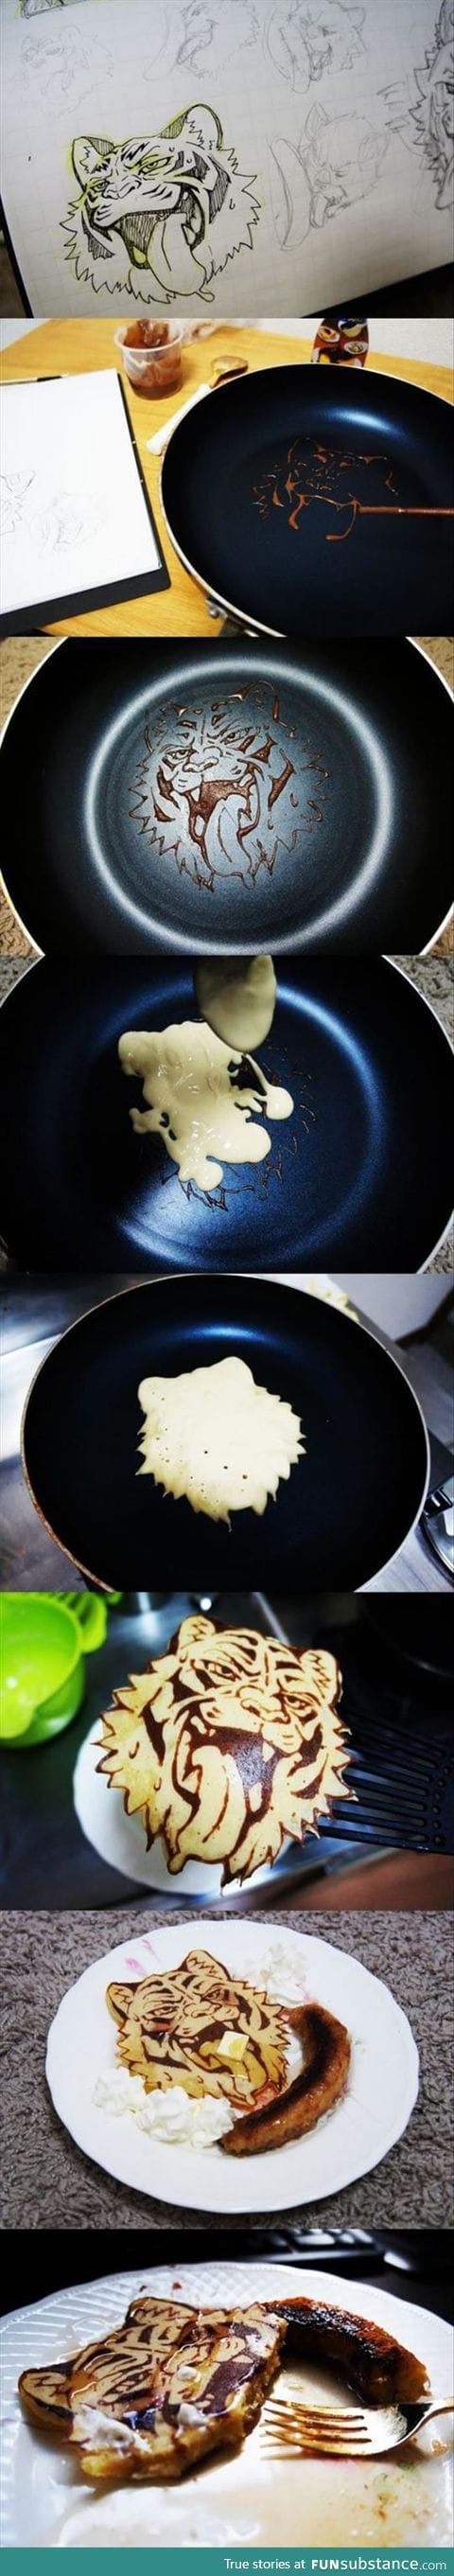 Bad-ass pancakes